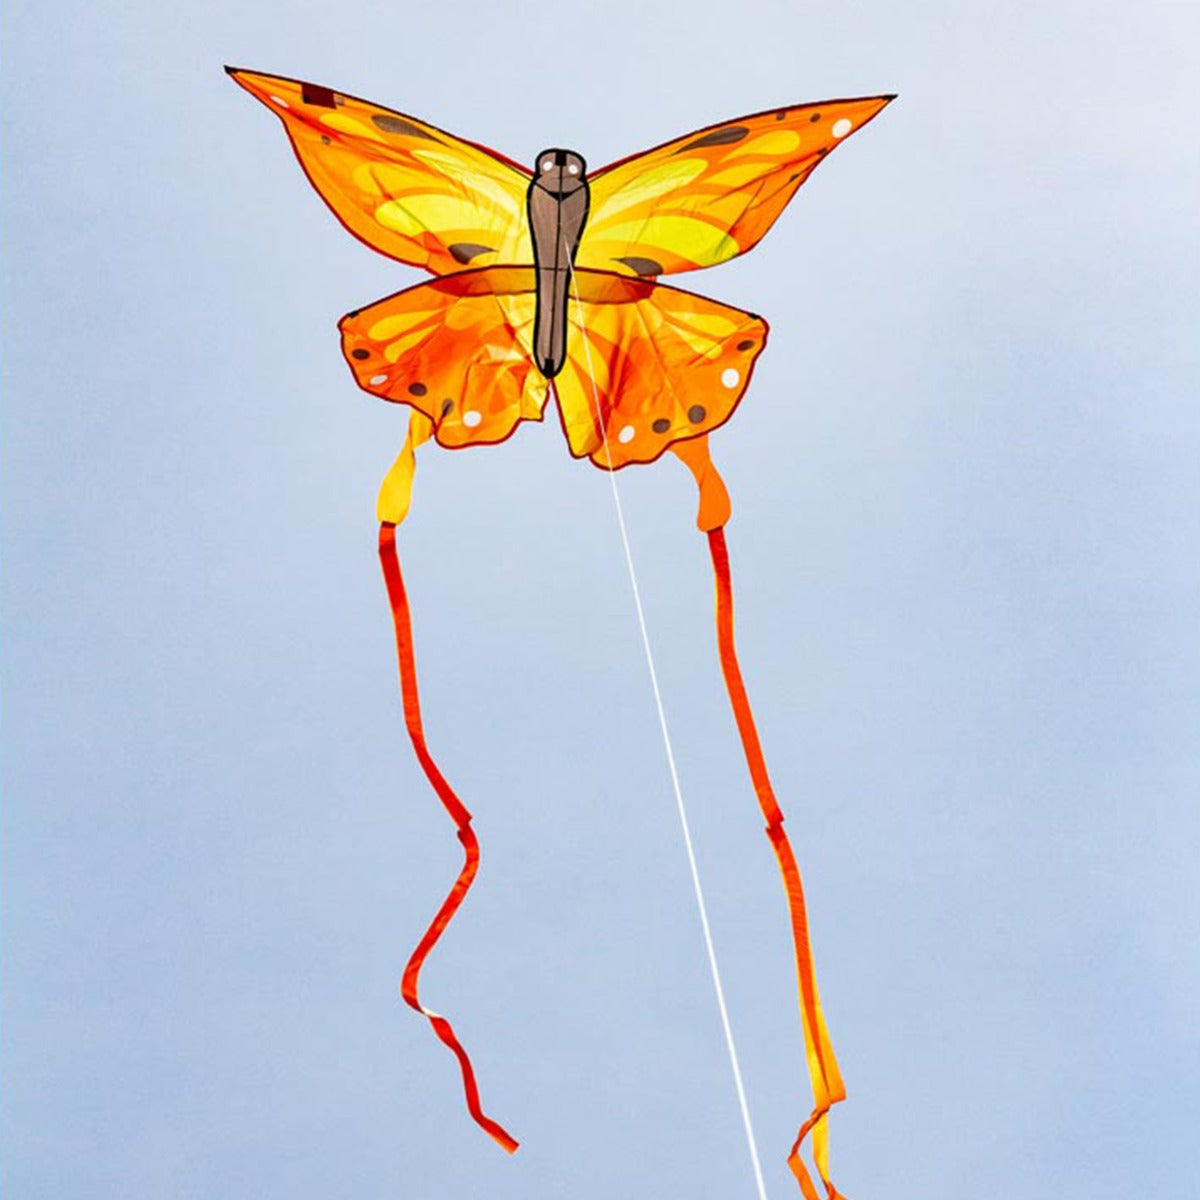 HQ Kinderdrachen Einleiner Drachen HQ Butterfly Kite Sunrise Schmetterling Flugdrache